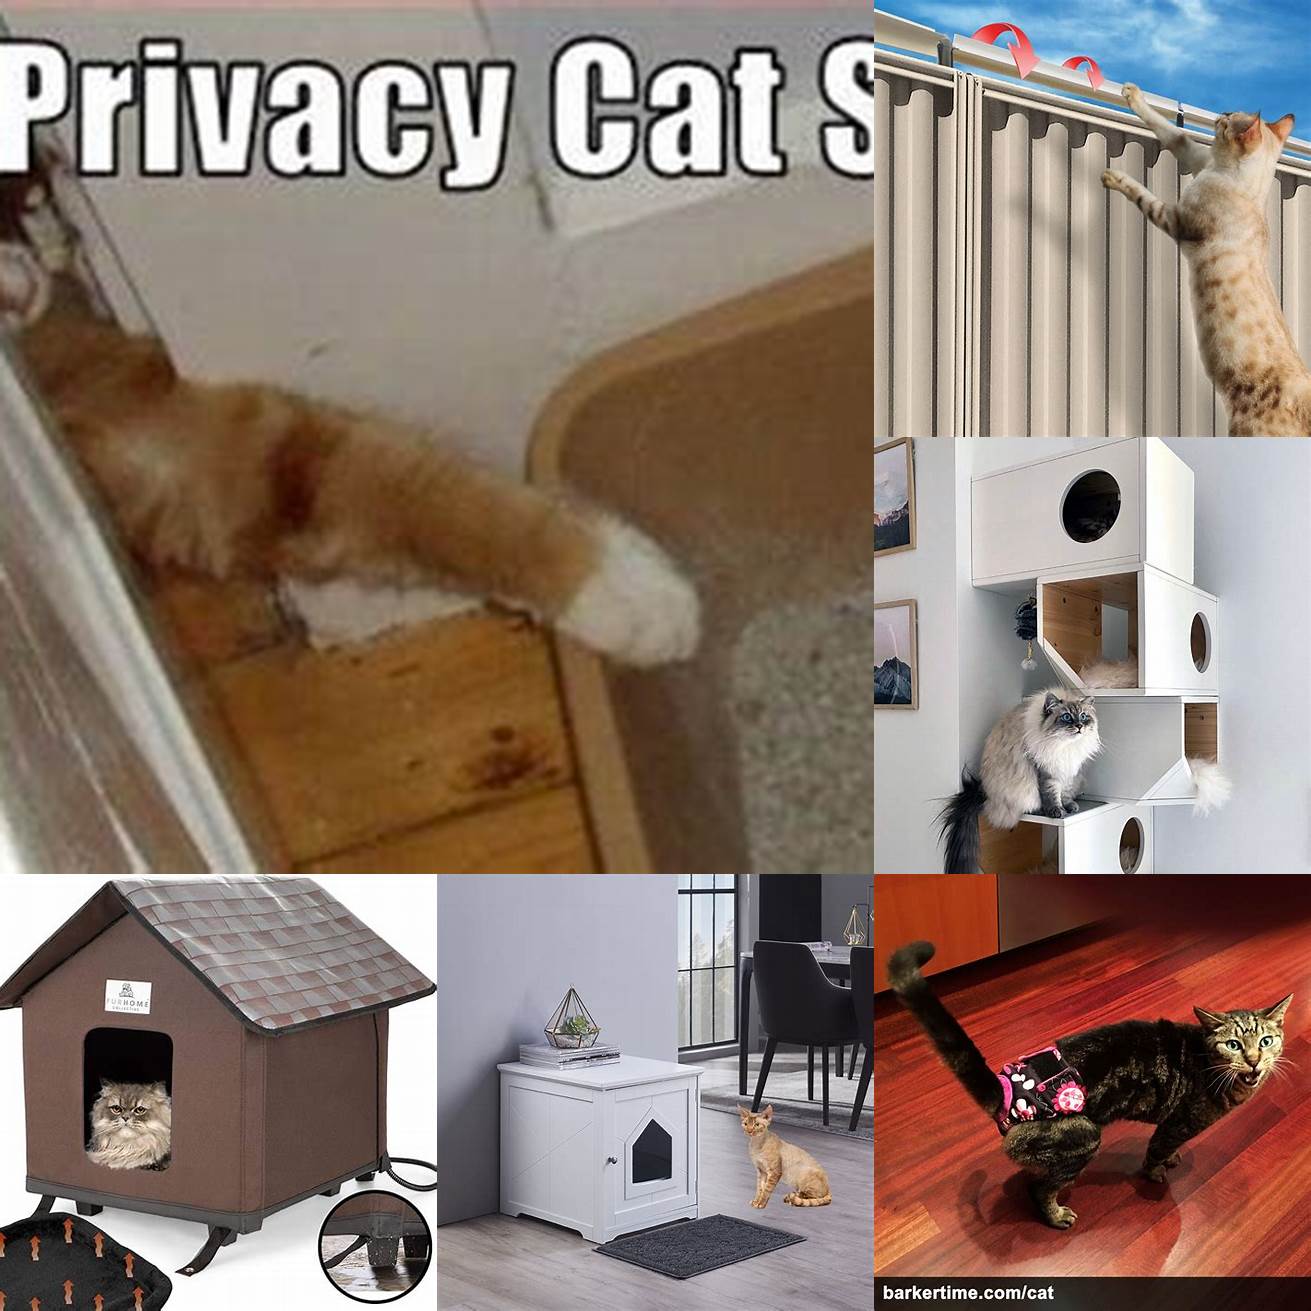 Provides More Privacy